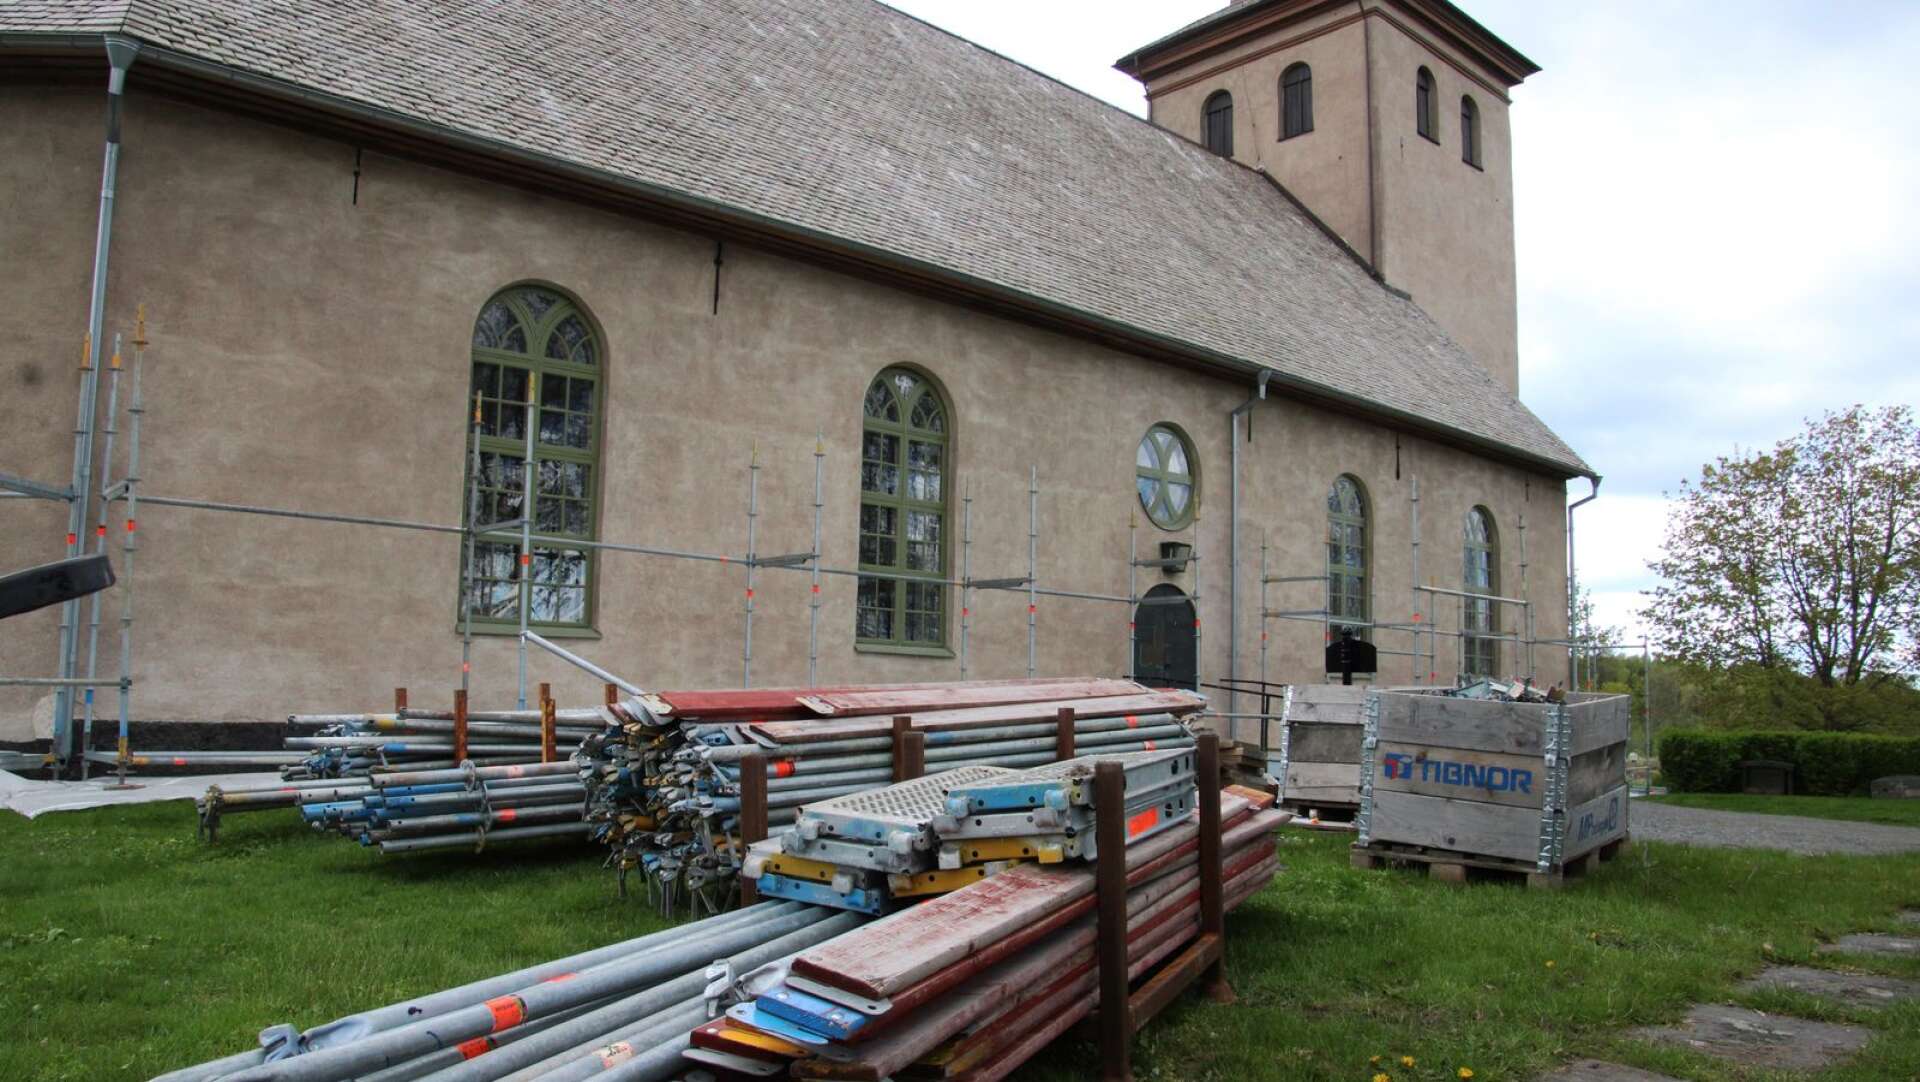 By kyrka ska målas om och återfå sin ursprungliga vita färg. Det är ett av flera renoveringsprojekt som ska genomföras i Säffle pastorat.